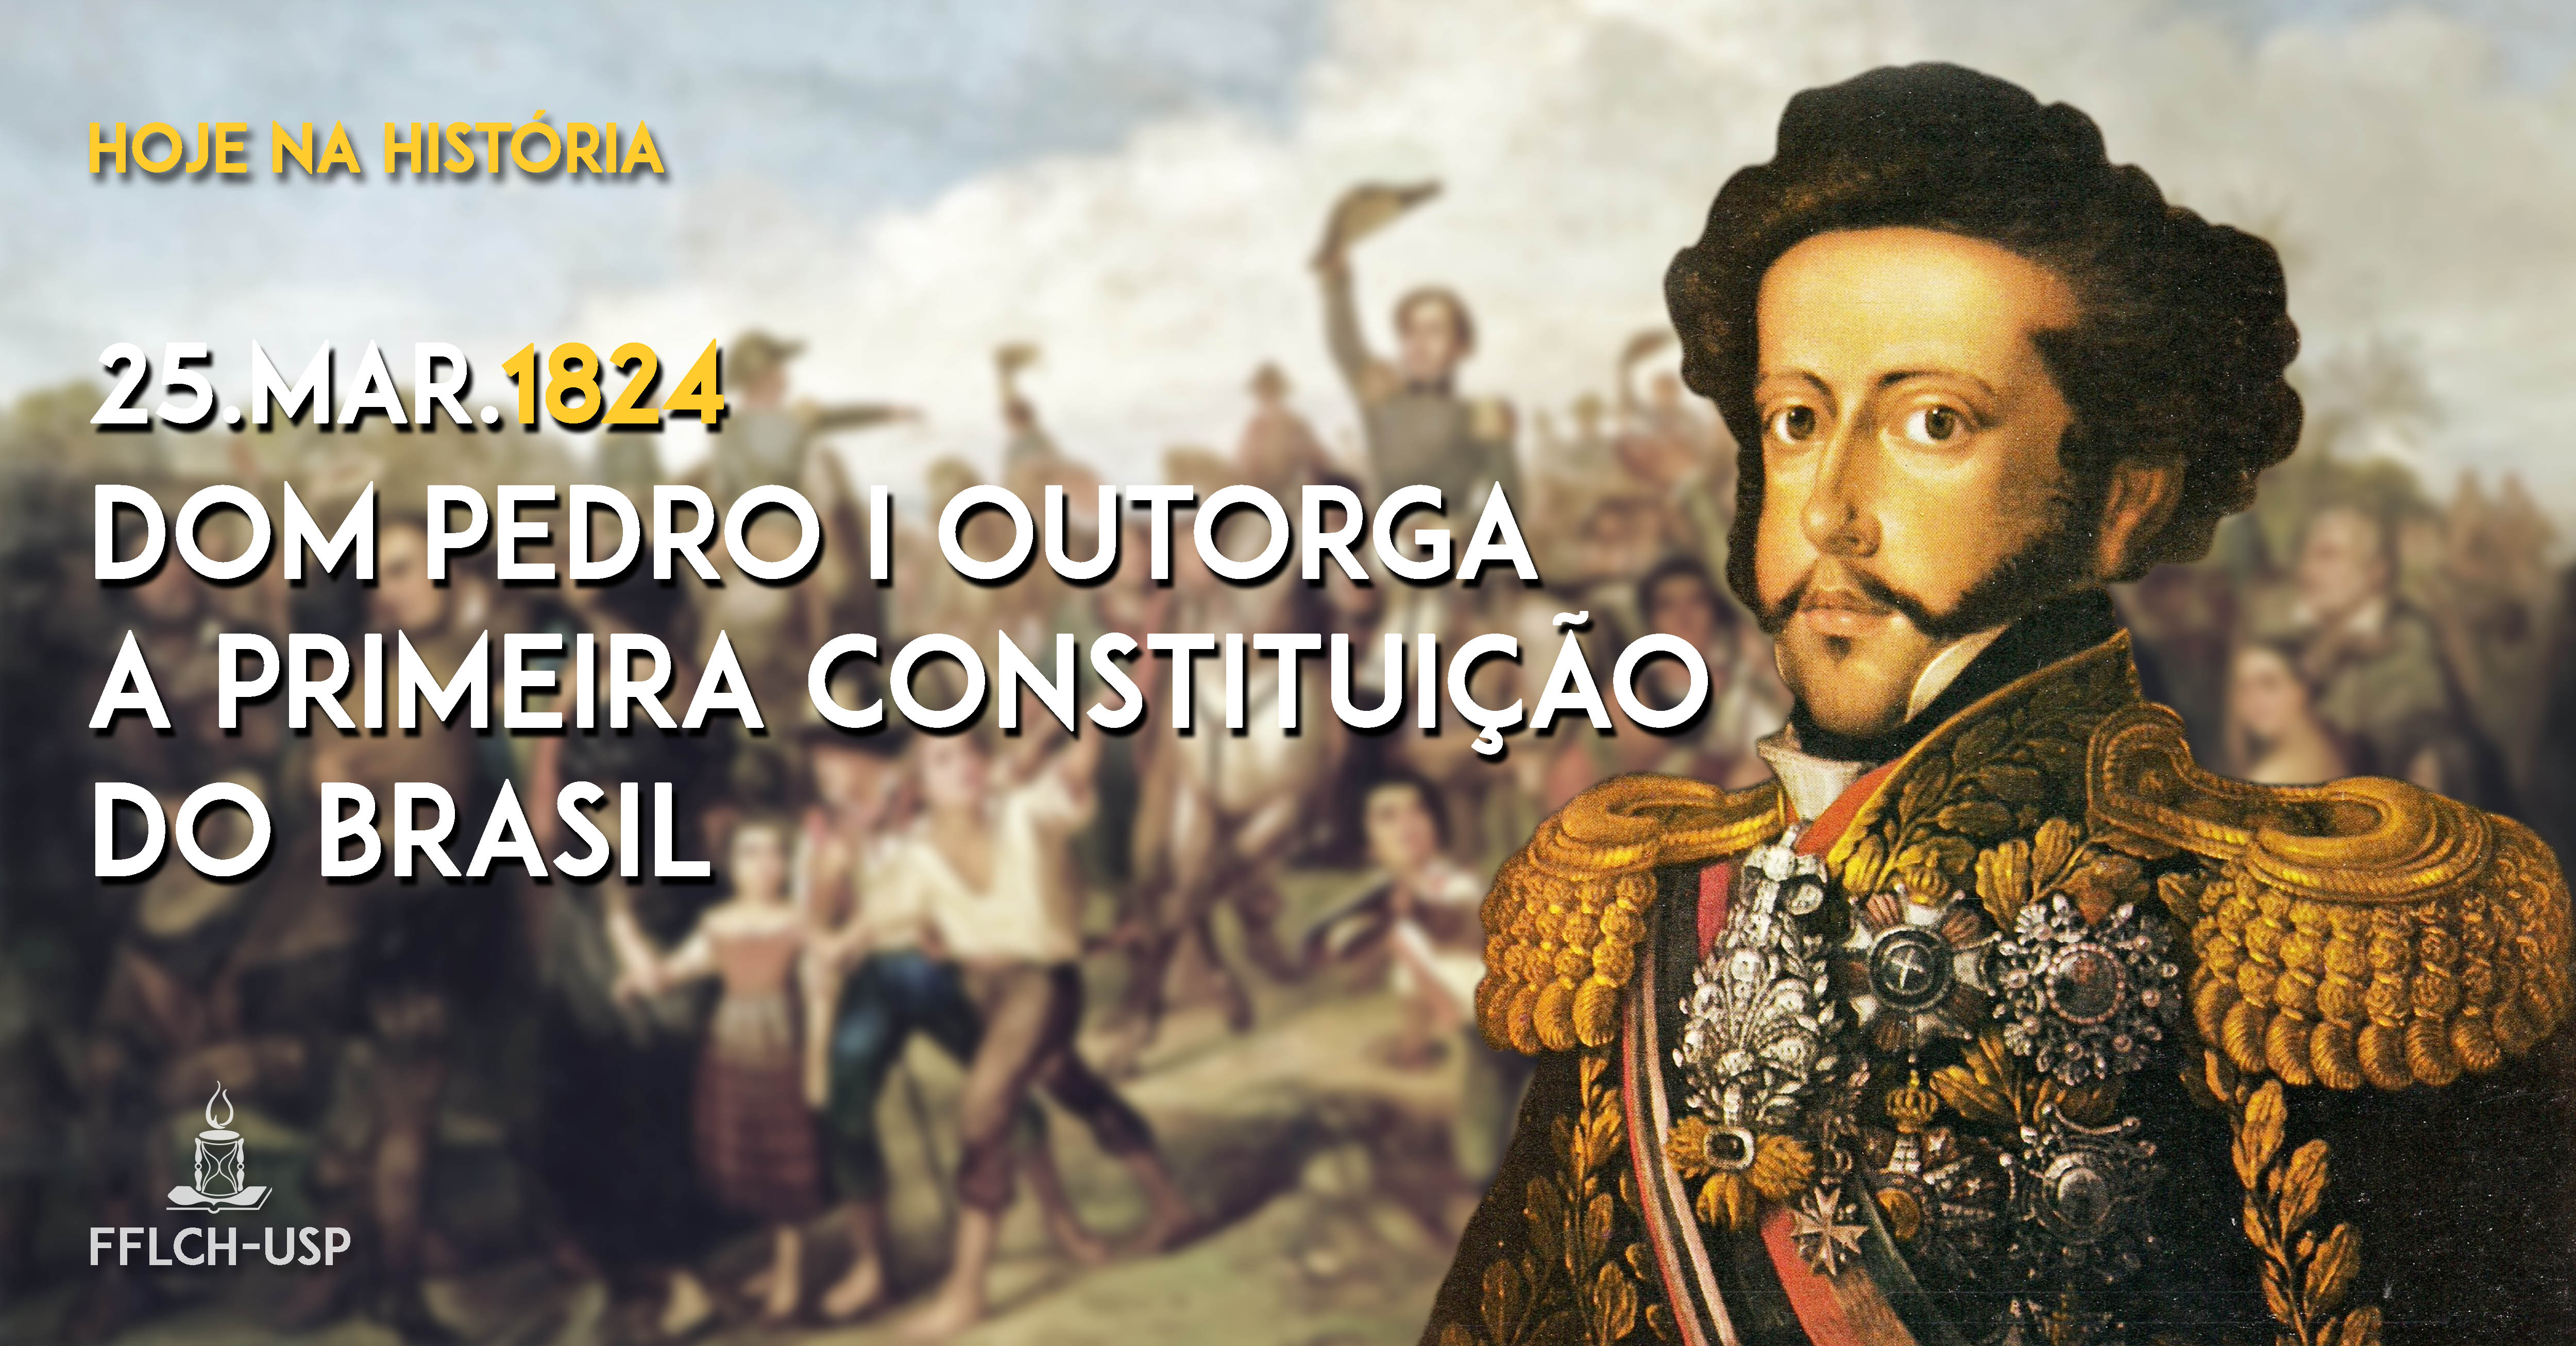 Dom Pedro I outorga a primeira Constituição do Brasil